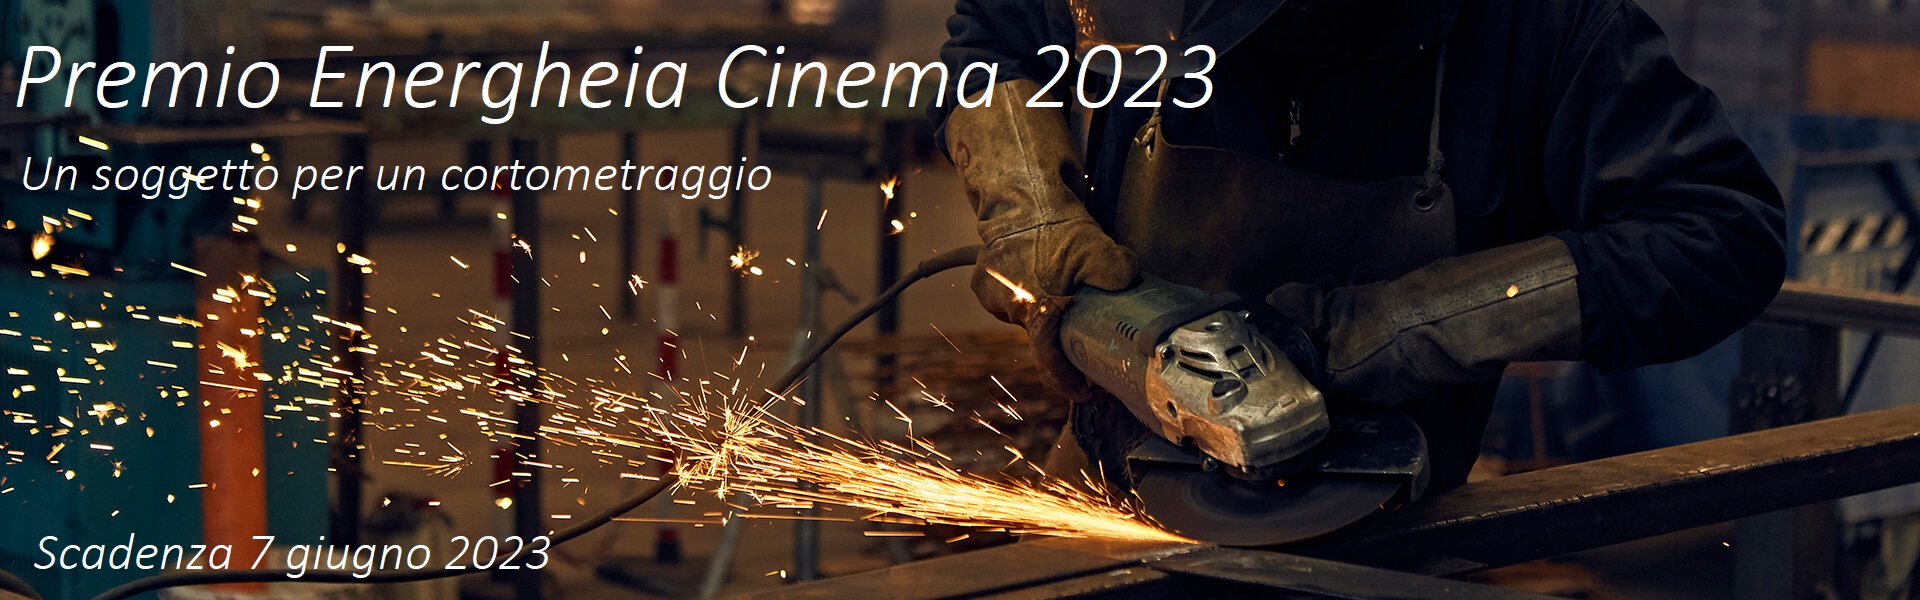 Premio Energheia Cinema, un soggetto per un cortometraggio. Il bando 2023